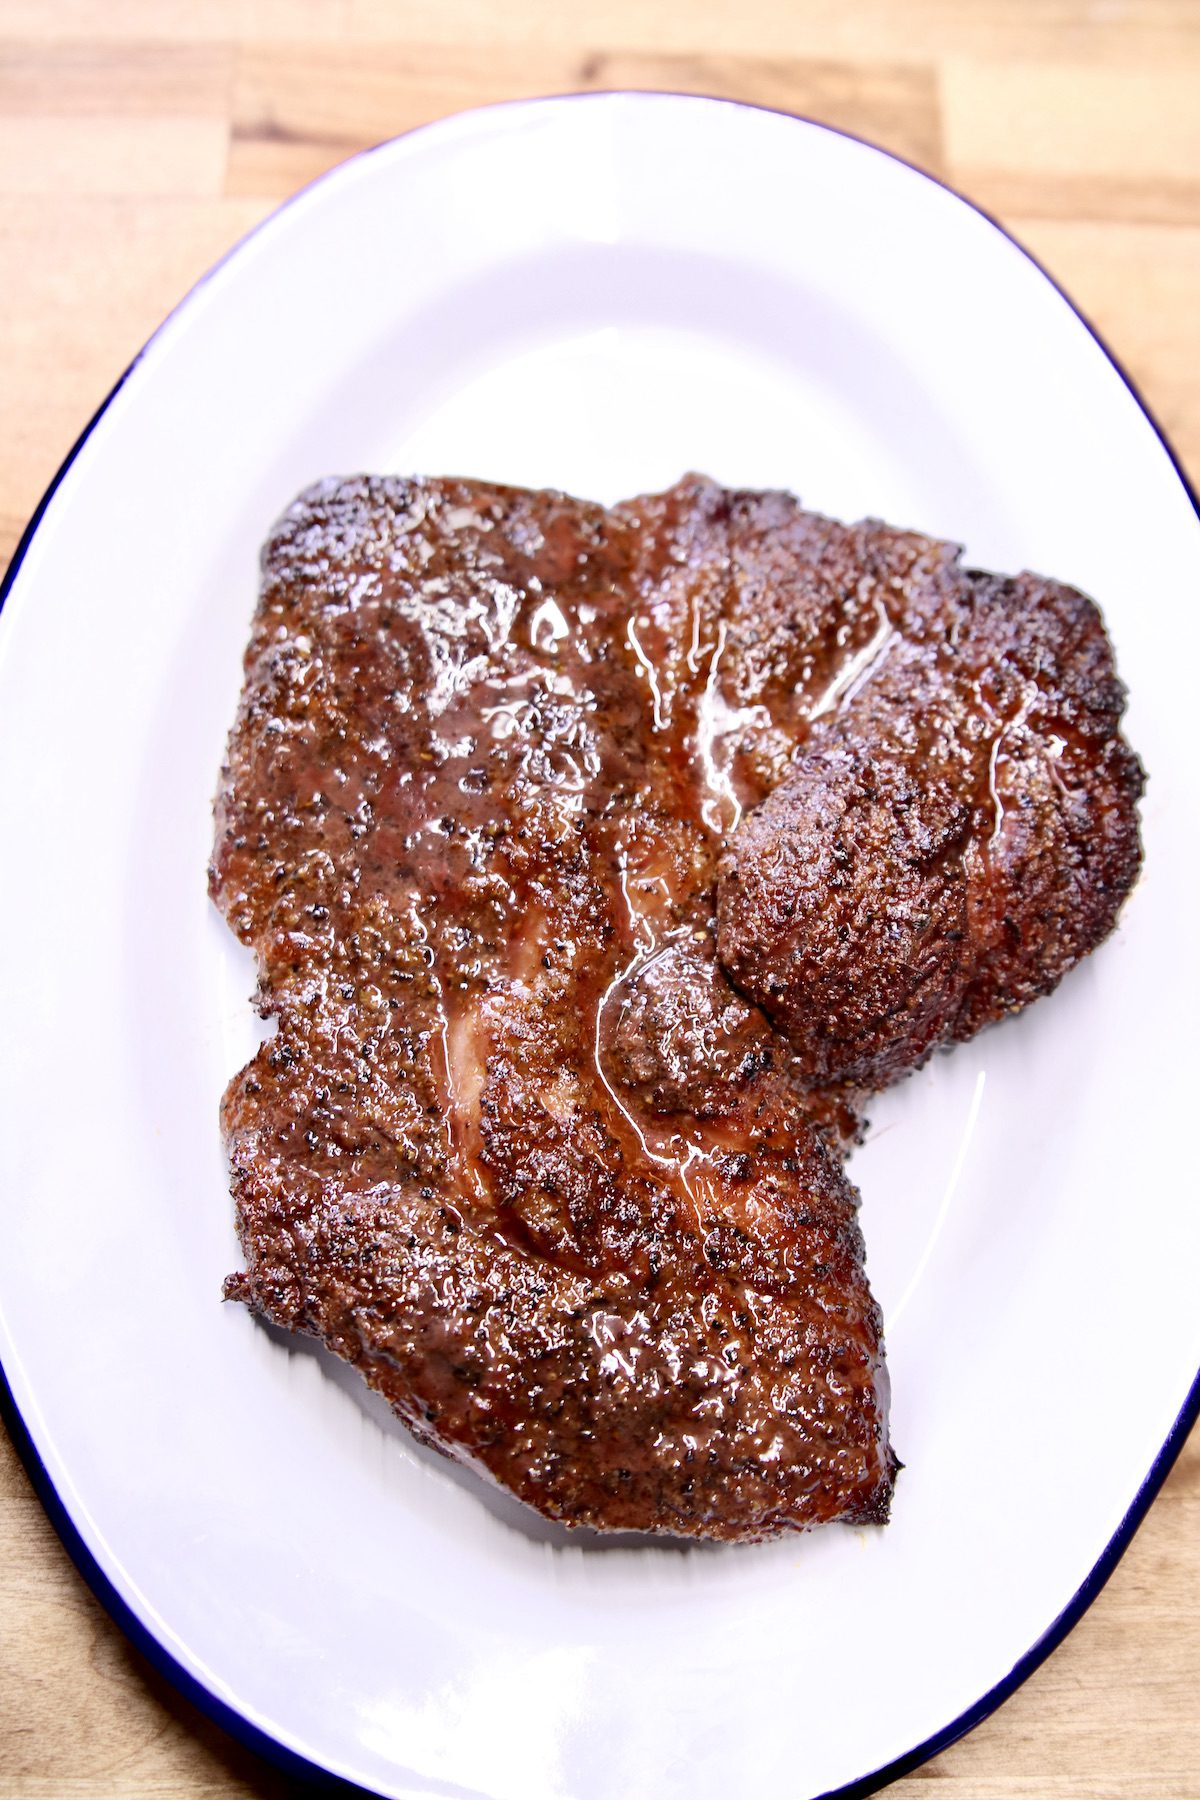 grilled chuck steak on a platter